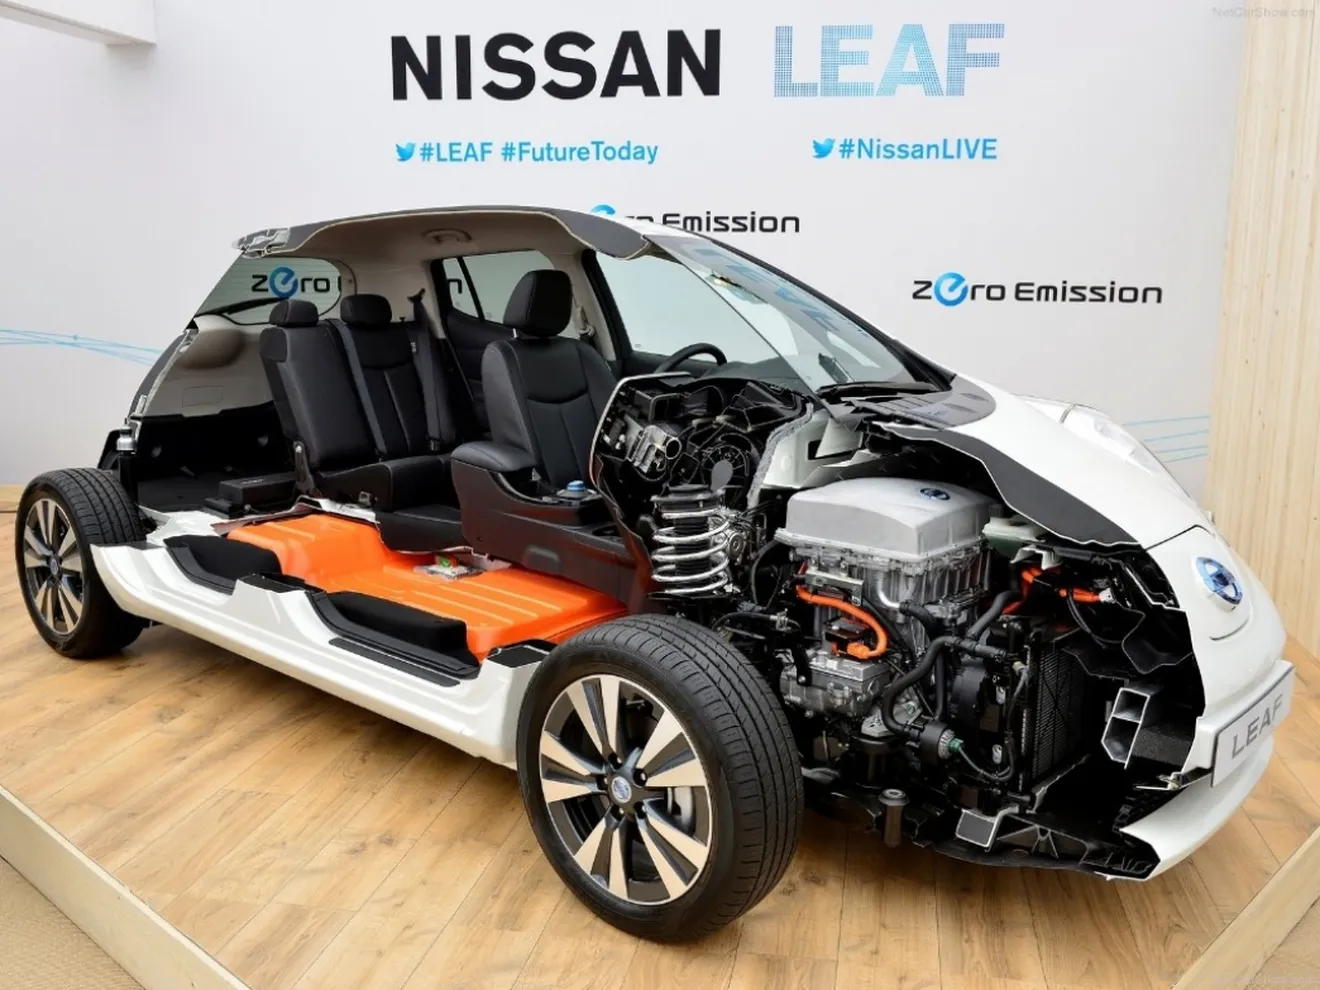 La próxima generación del Nissan Leaf tendrá 300 kilómetros de autonomía